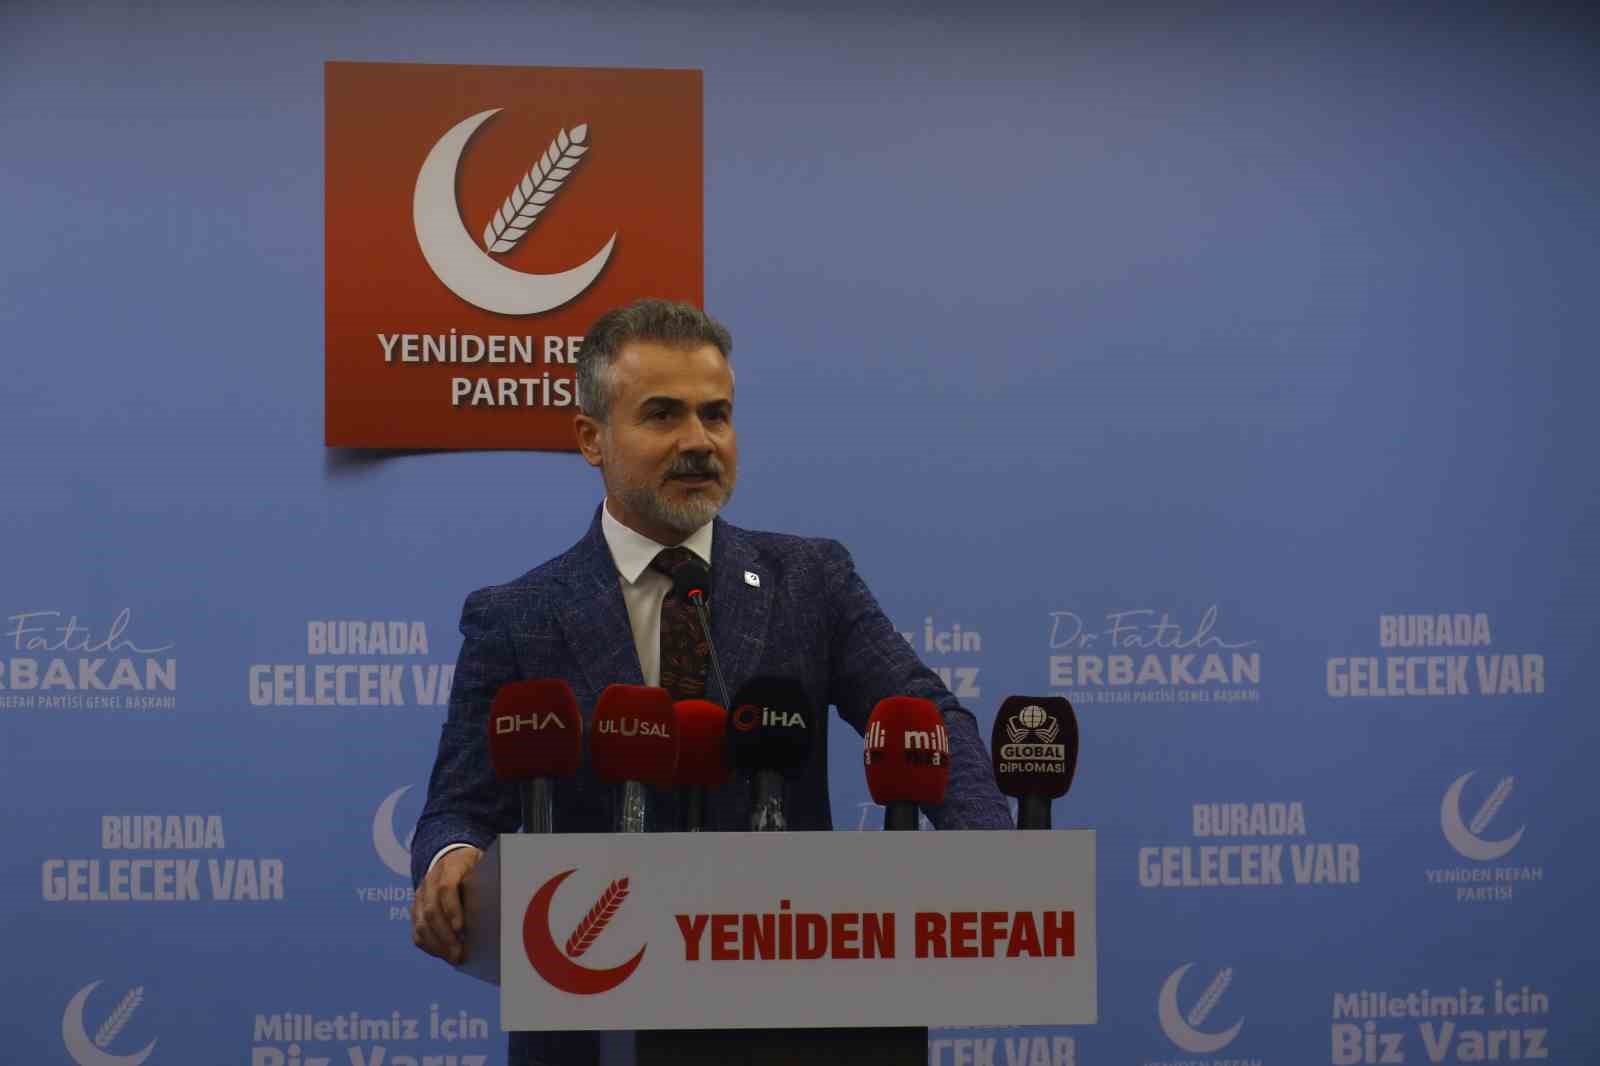 Yeniden Refah Partisi Genel Başkan Yardımcısı Kılıç: “Türkiye Büyük Millet Meclisi, gazi bir meclistir”